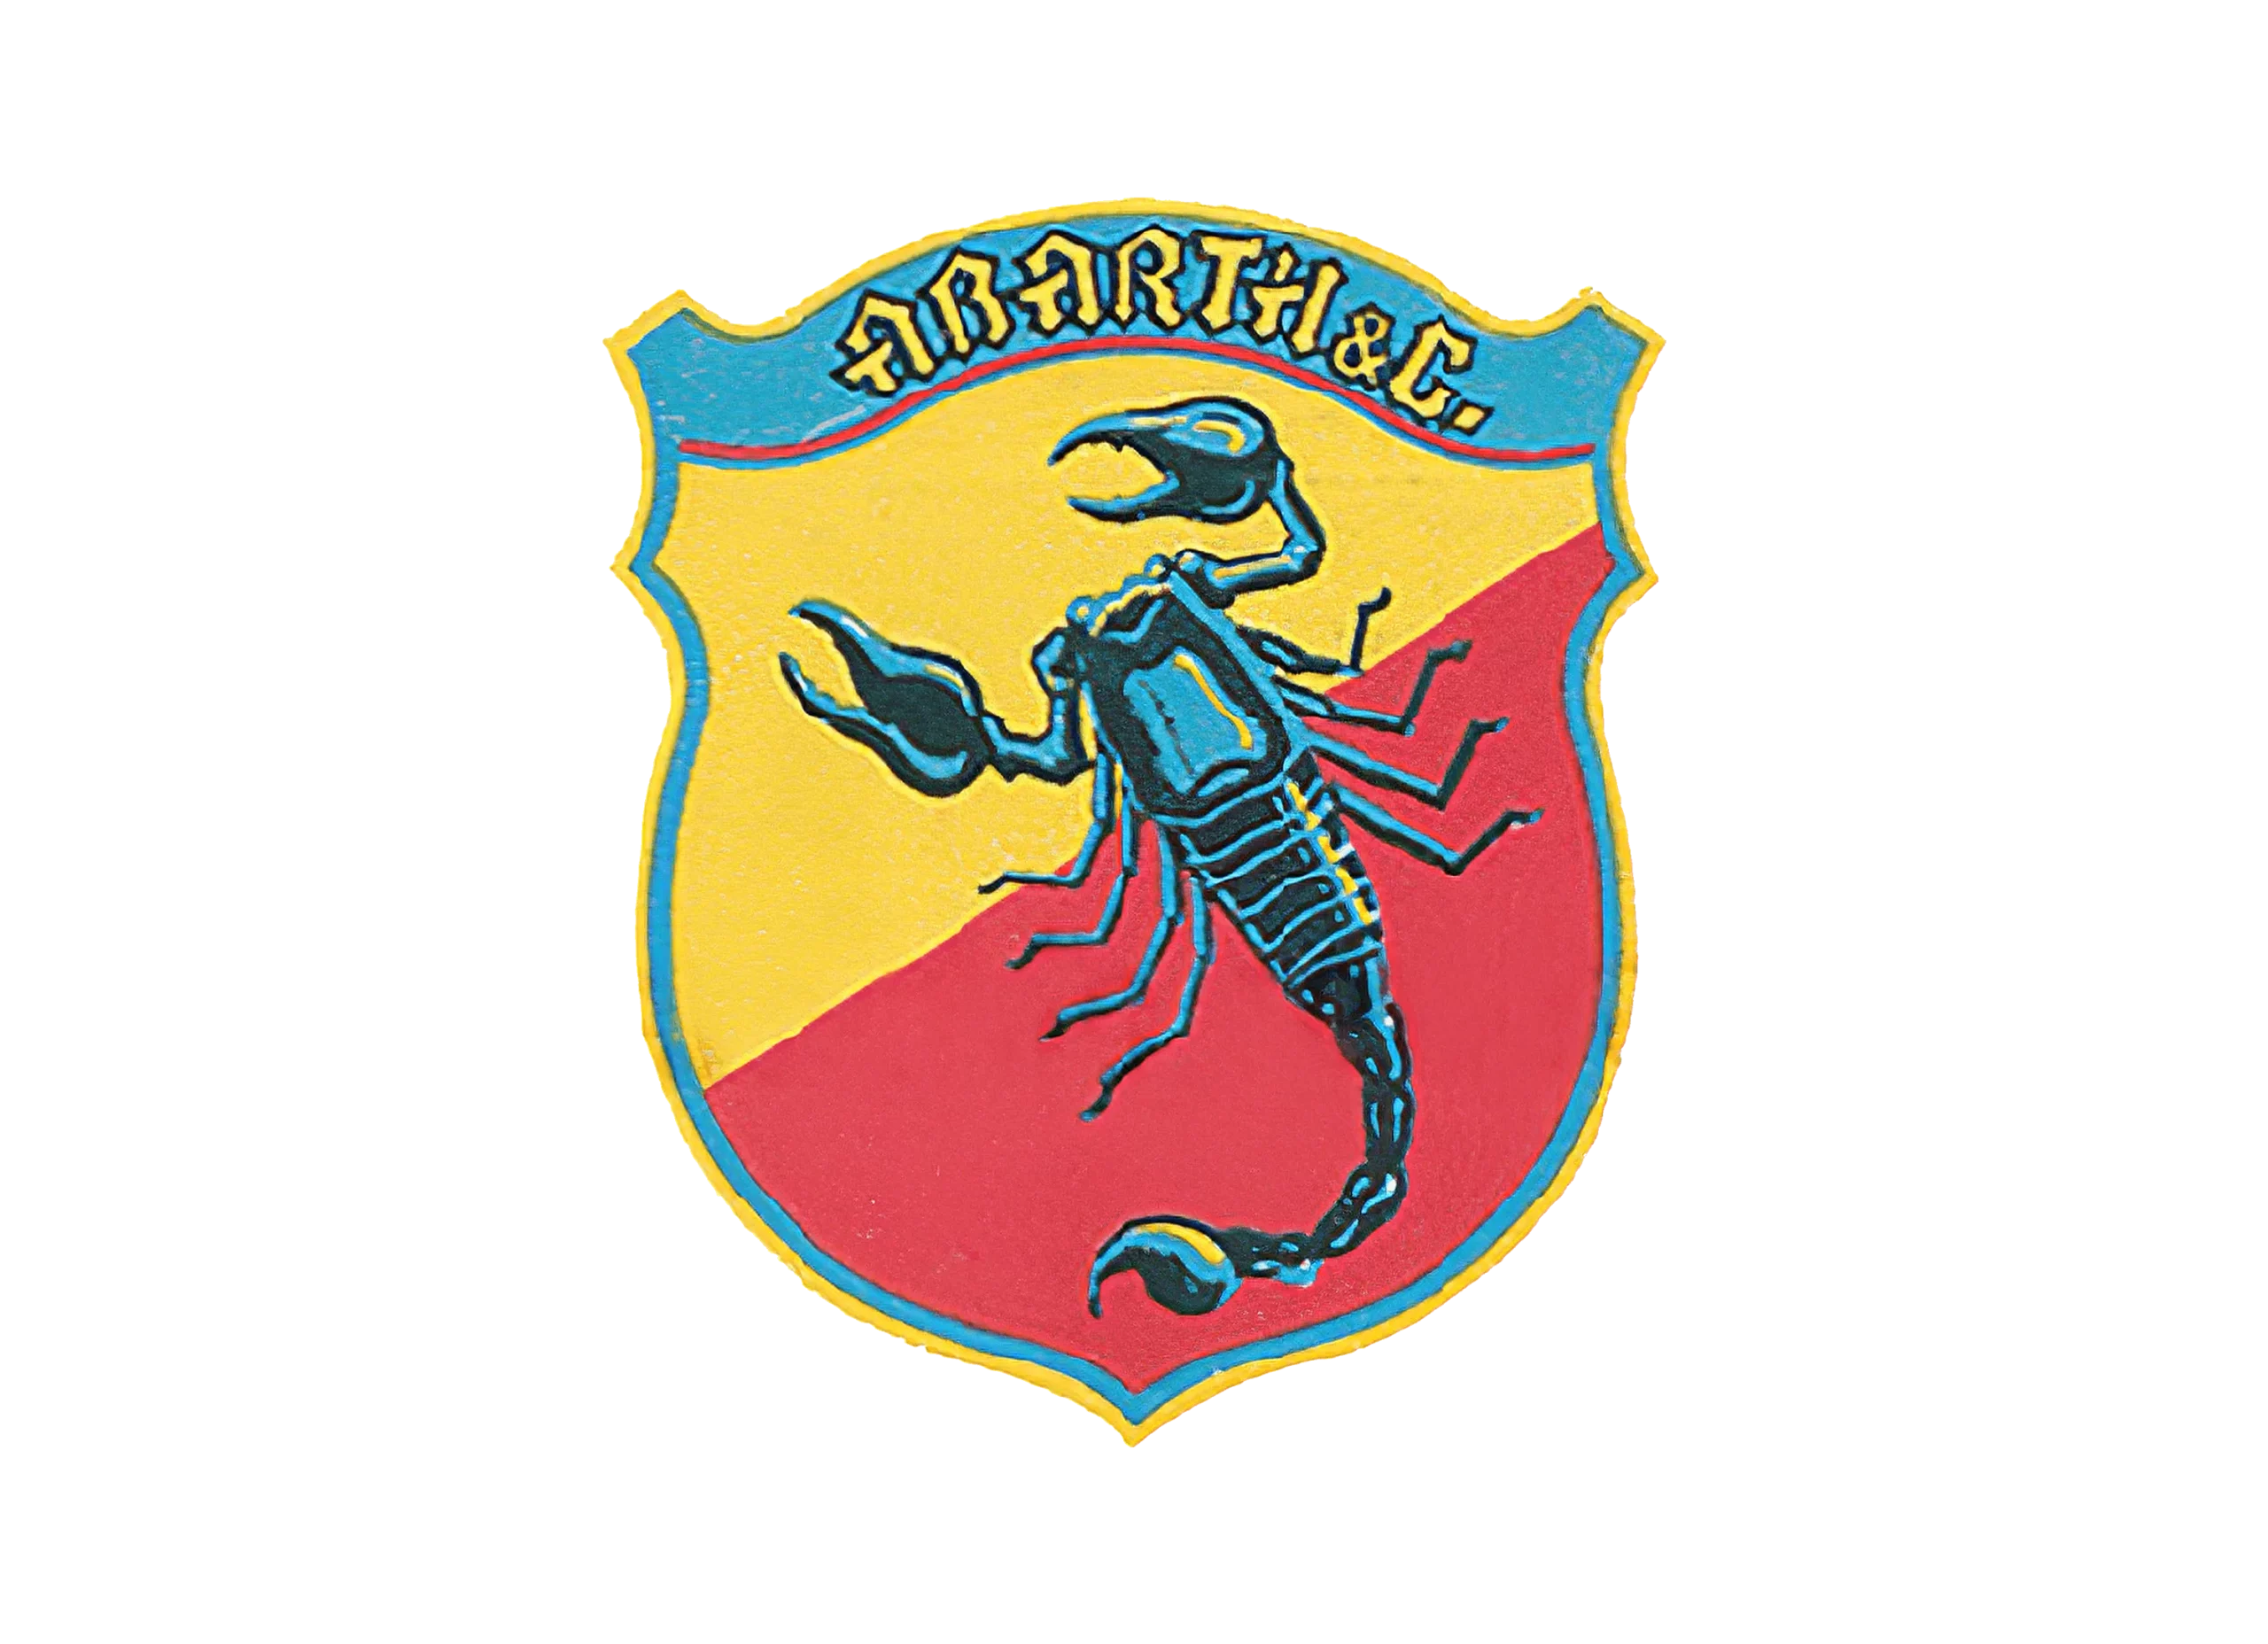 Abarth logo 1955